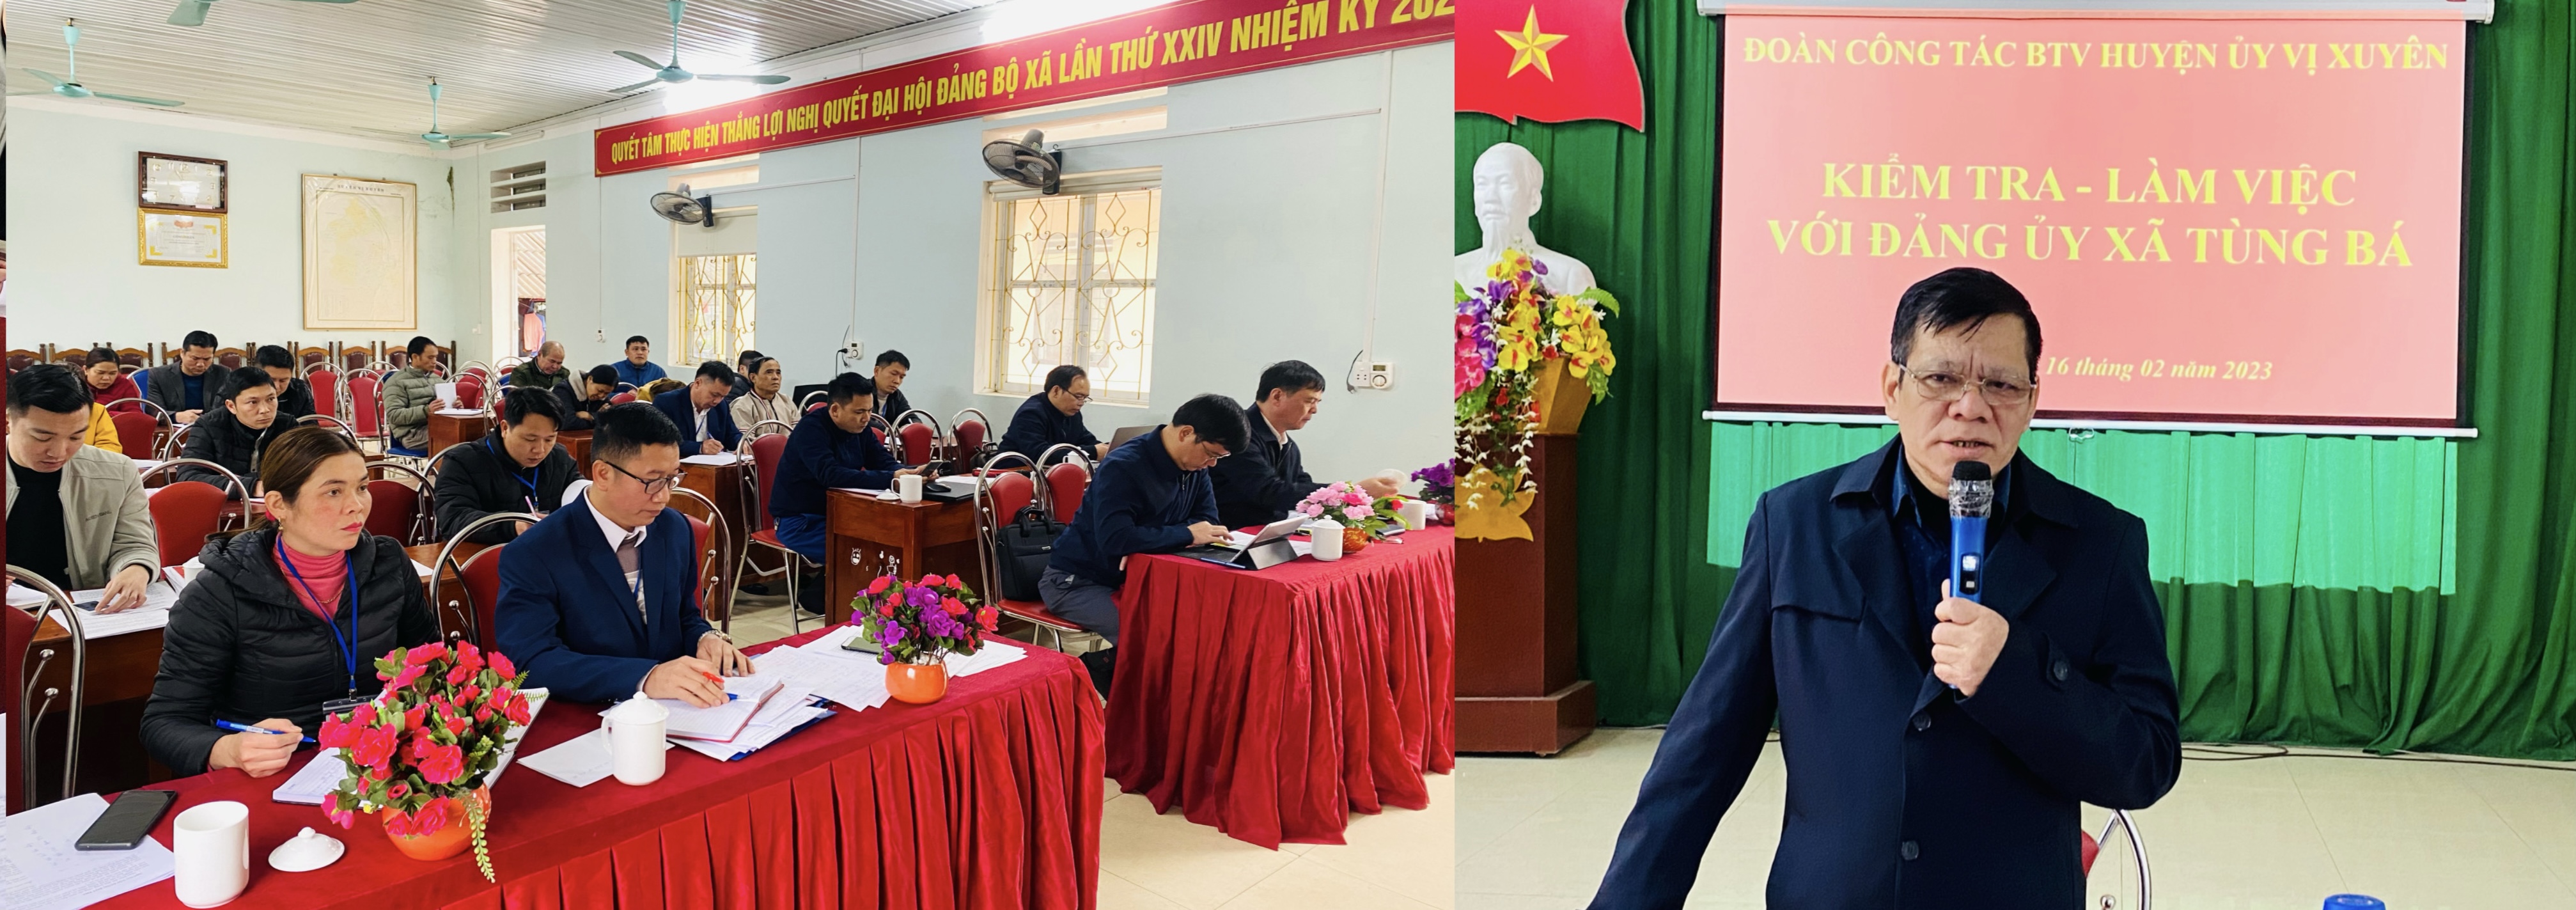 Đoàn công tác BTV Huyện ủy Vị Xuyên làm việc tại Tùng Bá, Thuận Hoà